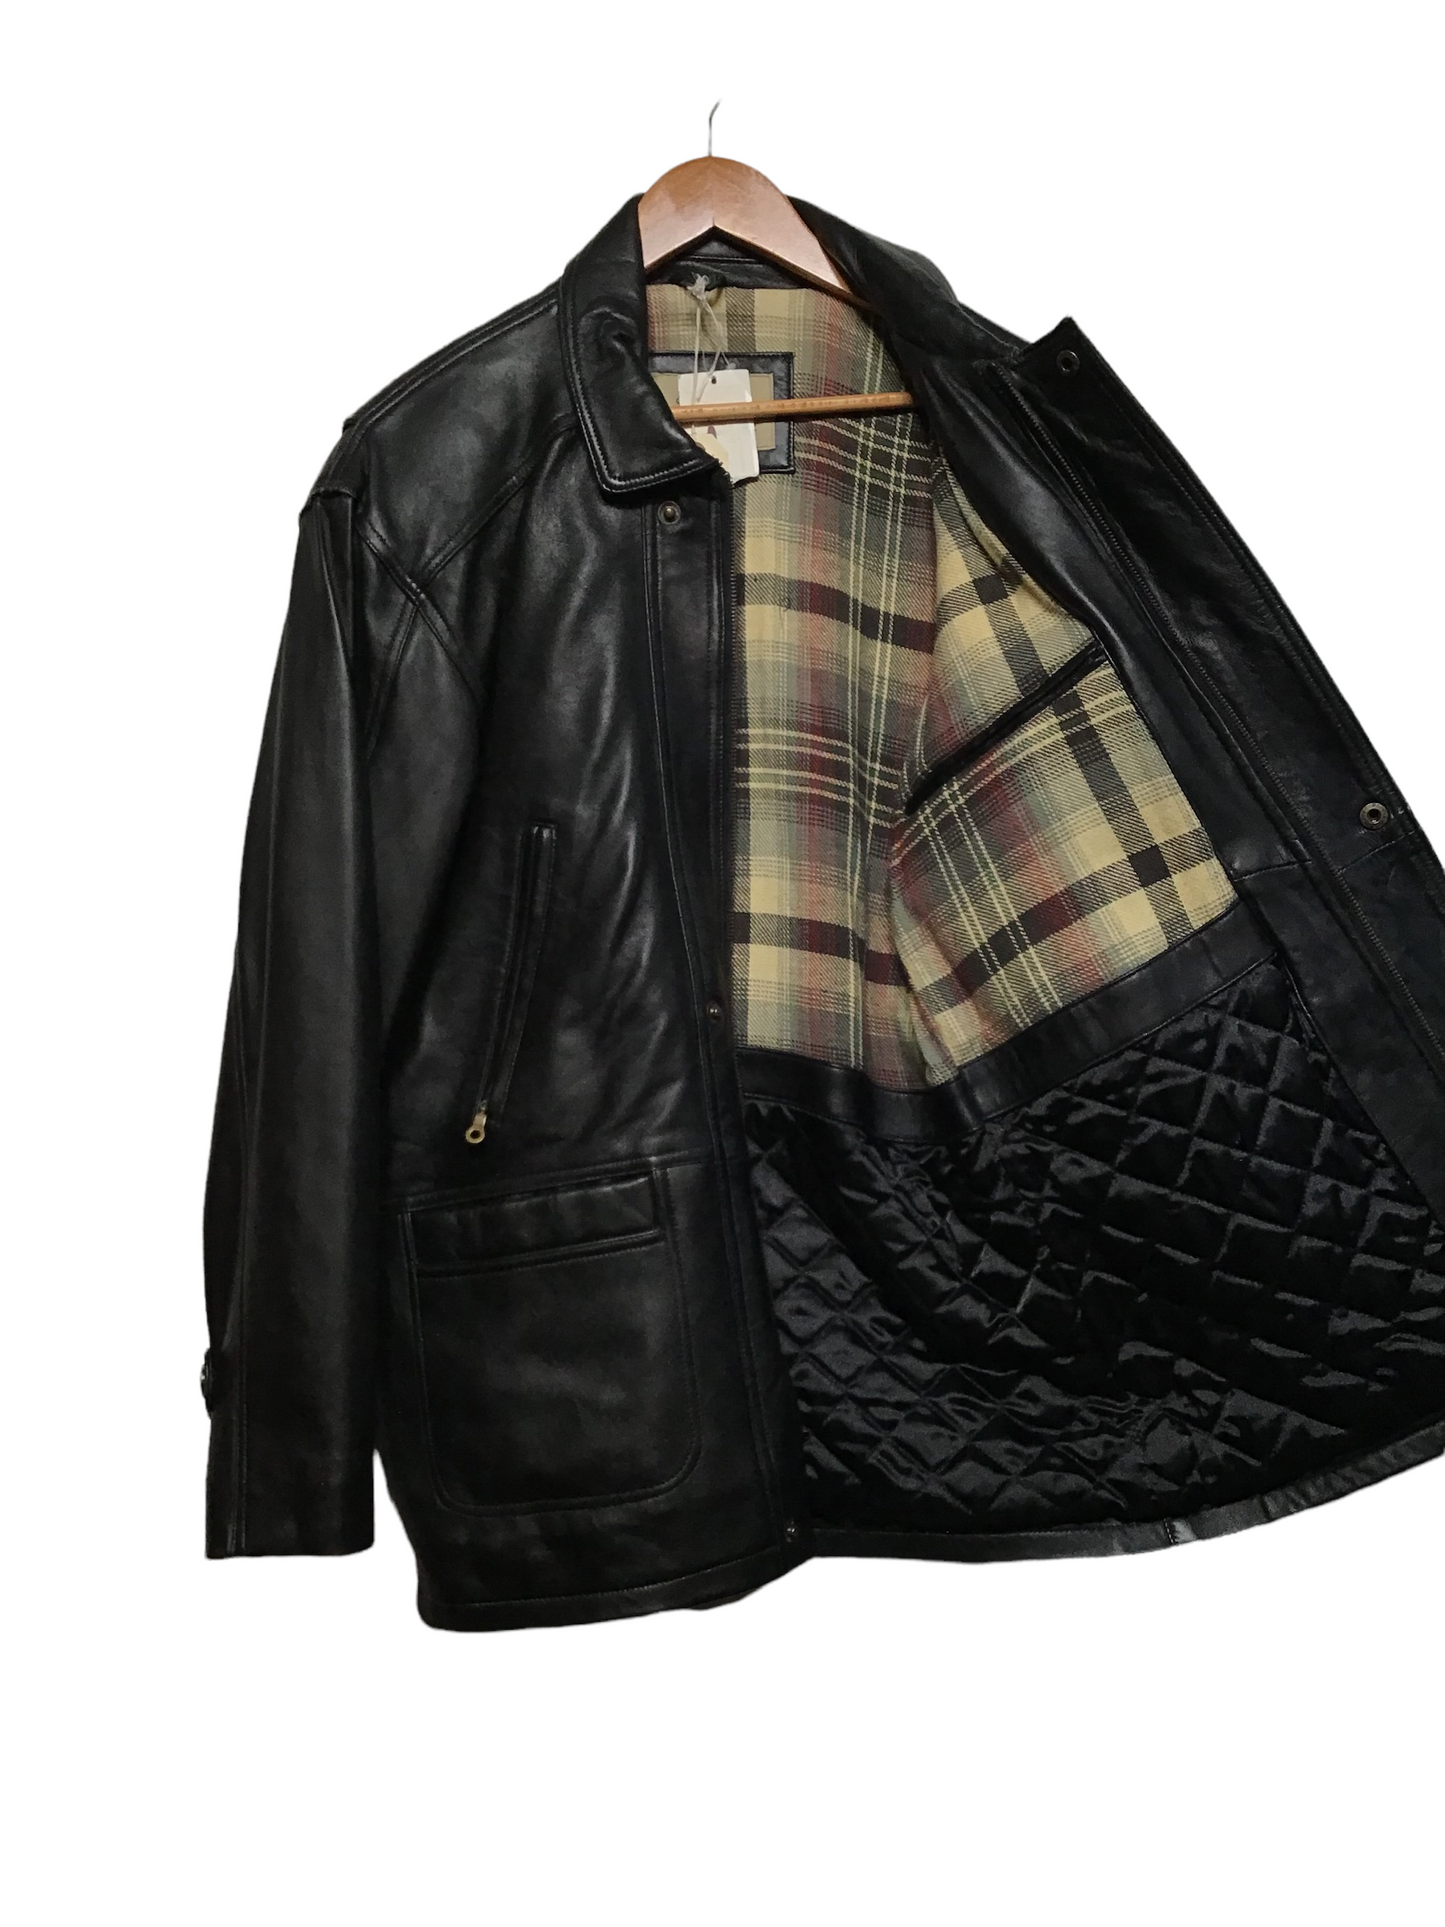 Black Leather Coat (Size M)